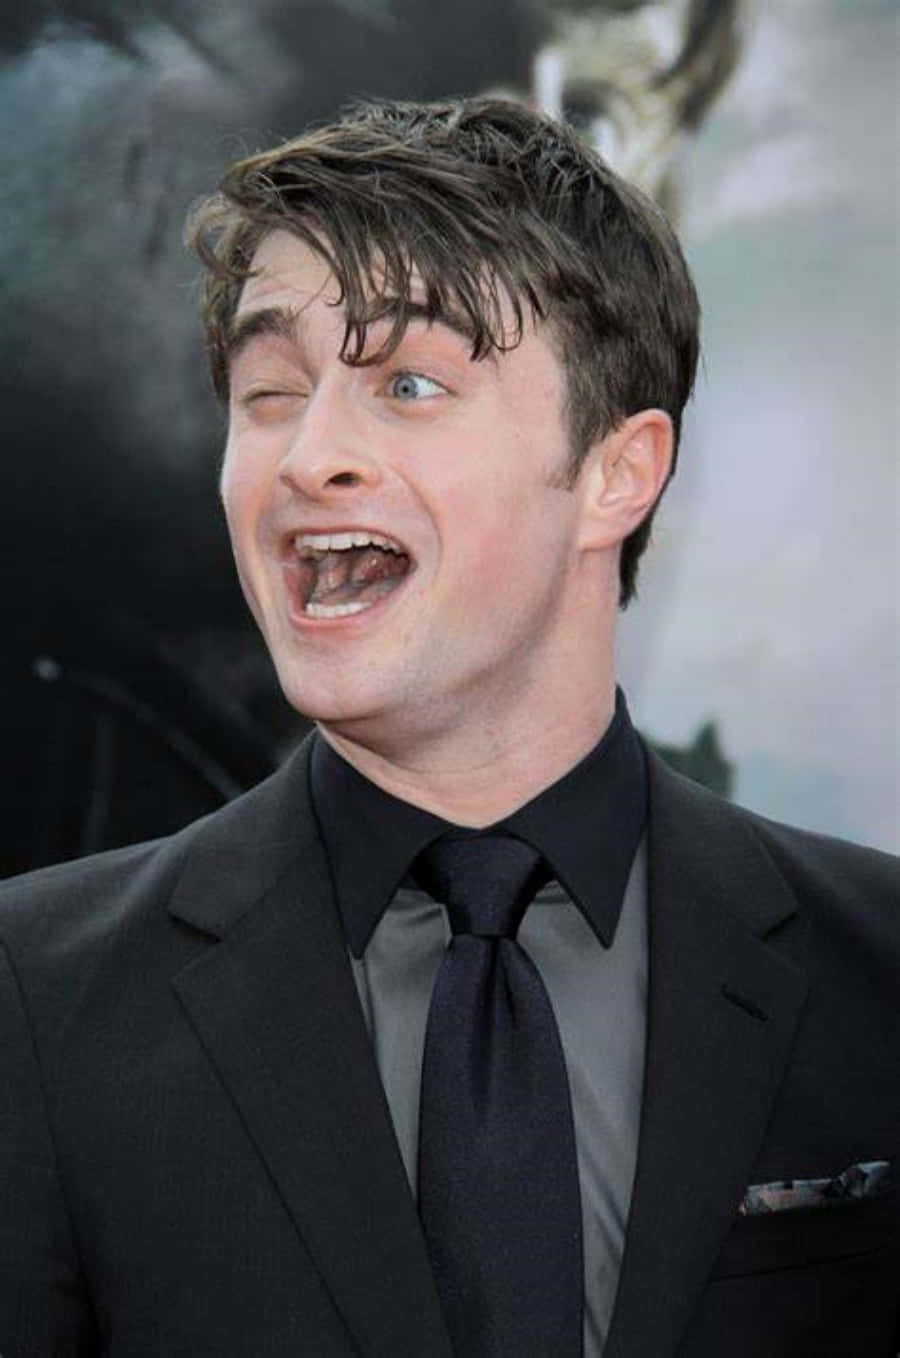 Imágenesdivertidas Del Famoso Actor Daniel Radcliffe